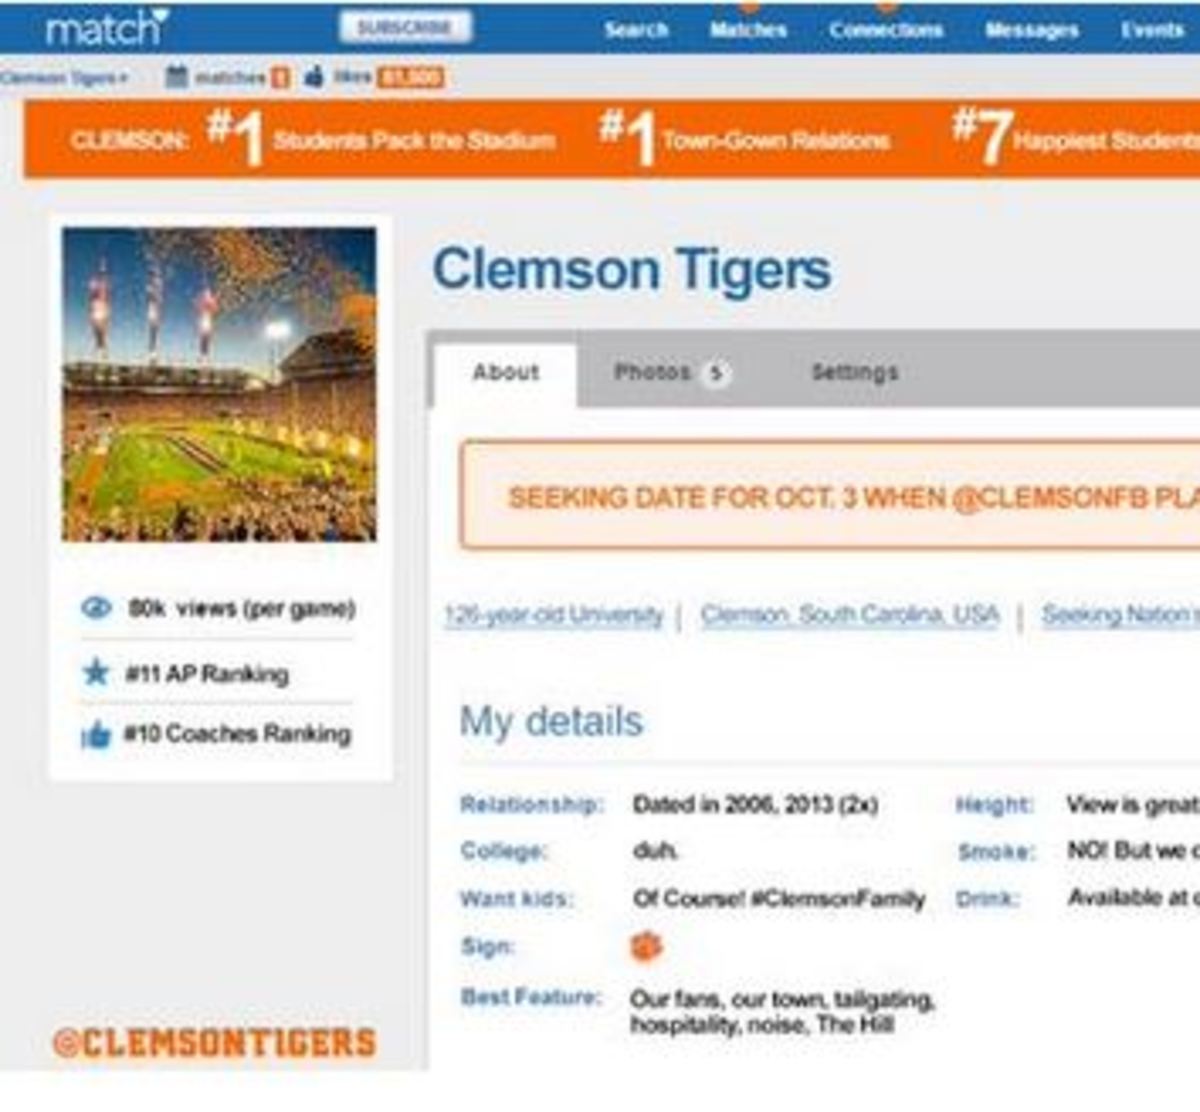 Clemson Tigers make a Match.com profile.